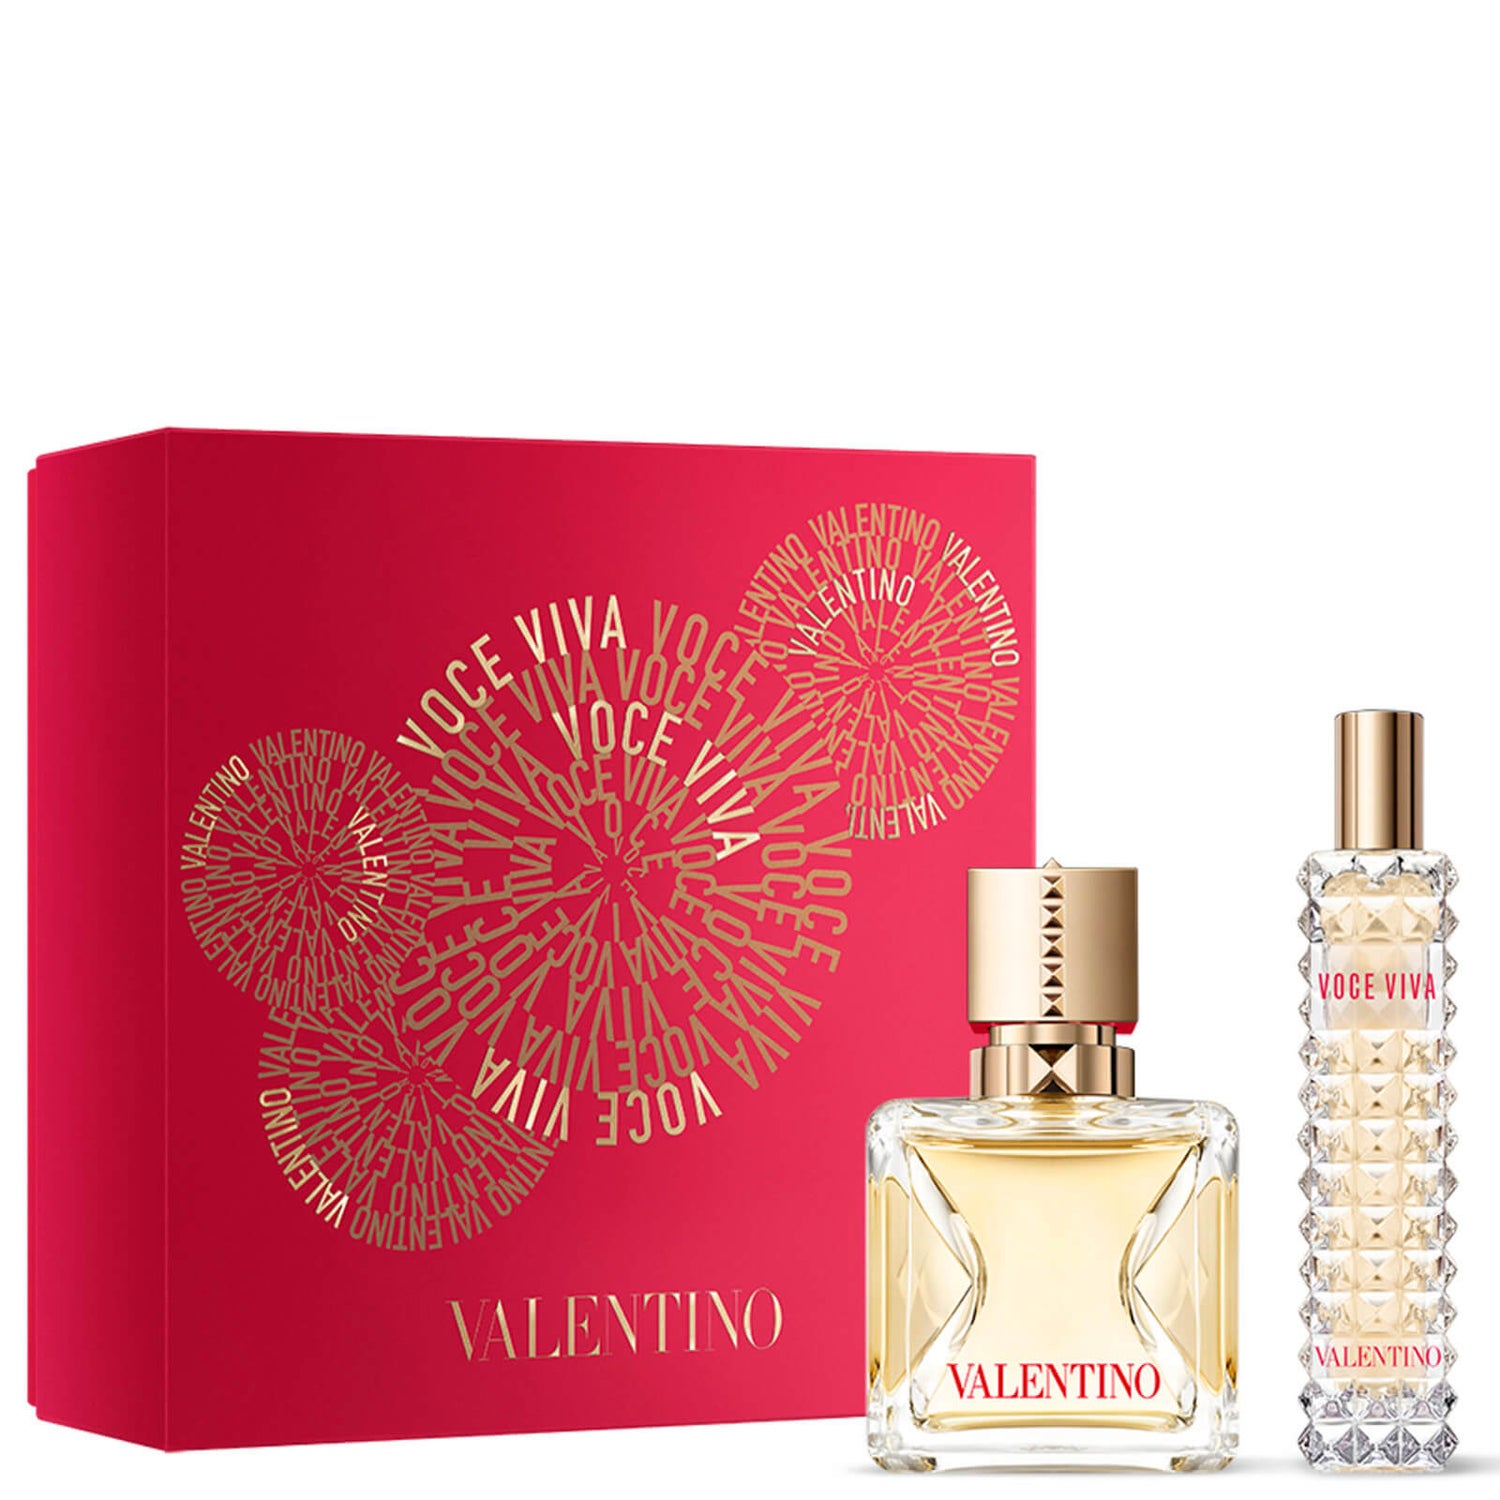 Valentino Voce Viva Eau de Parfum Coffret Cadeau 50ml